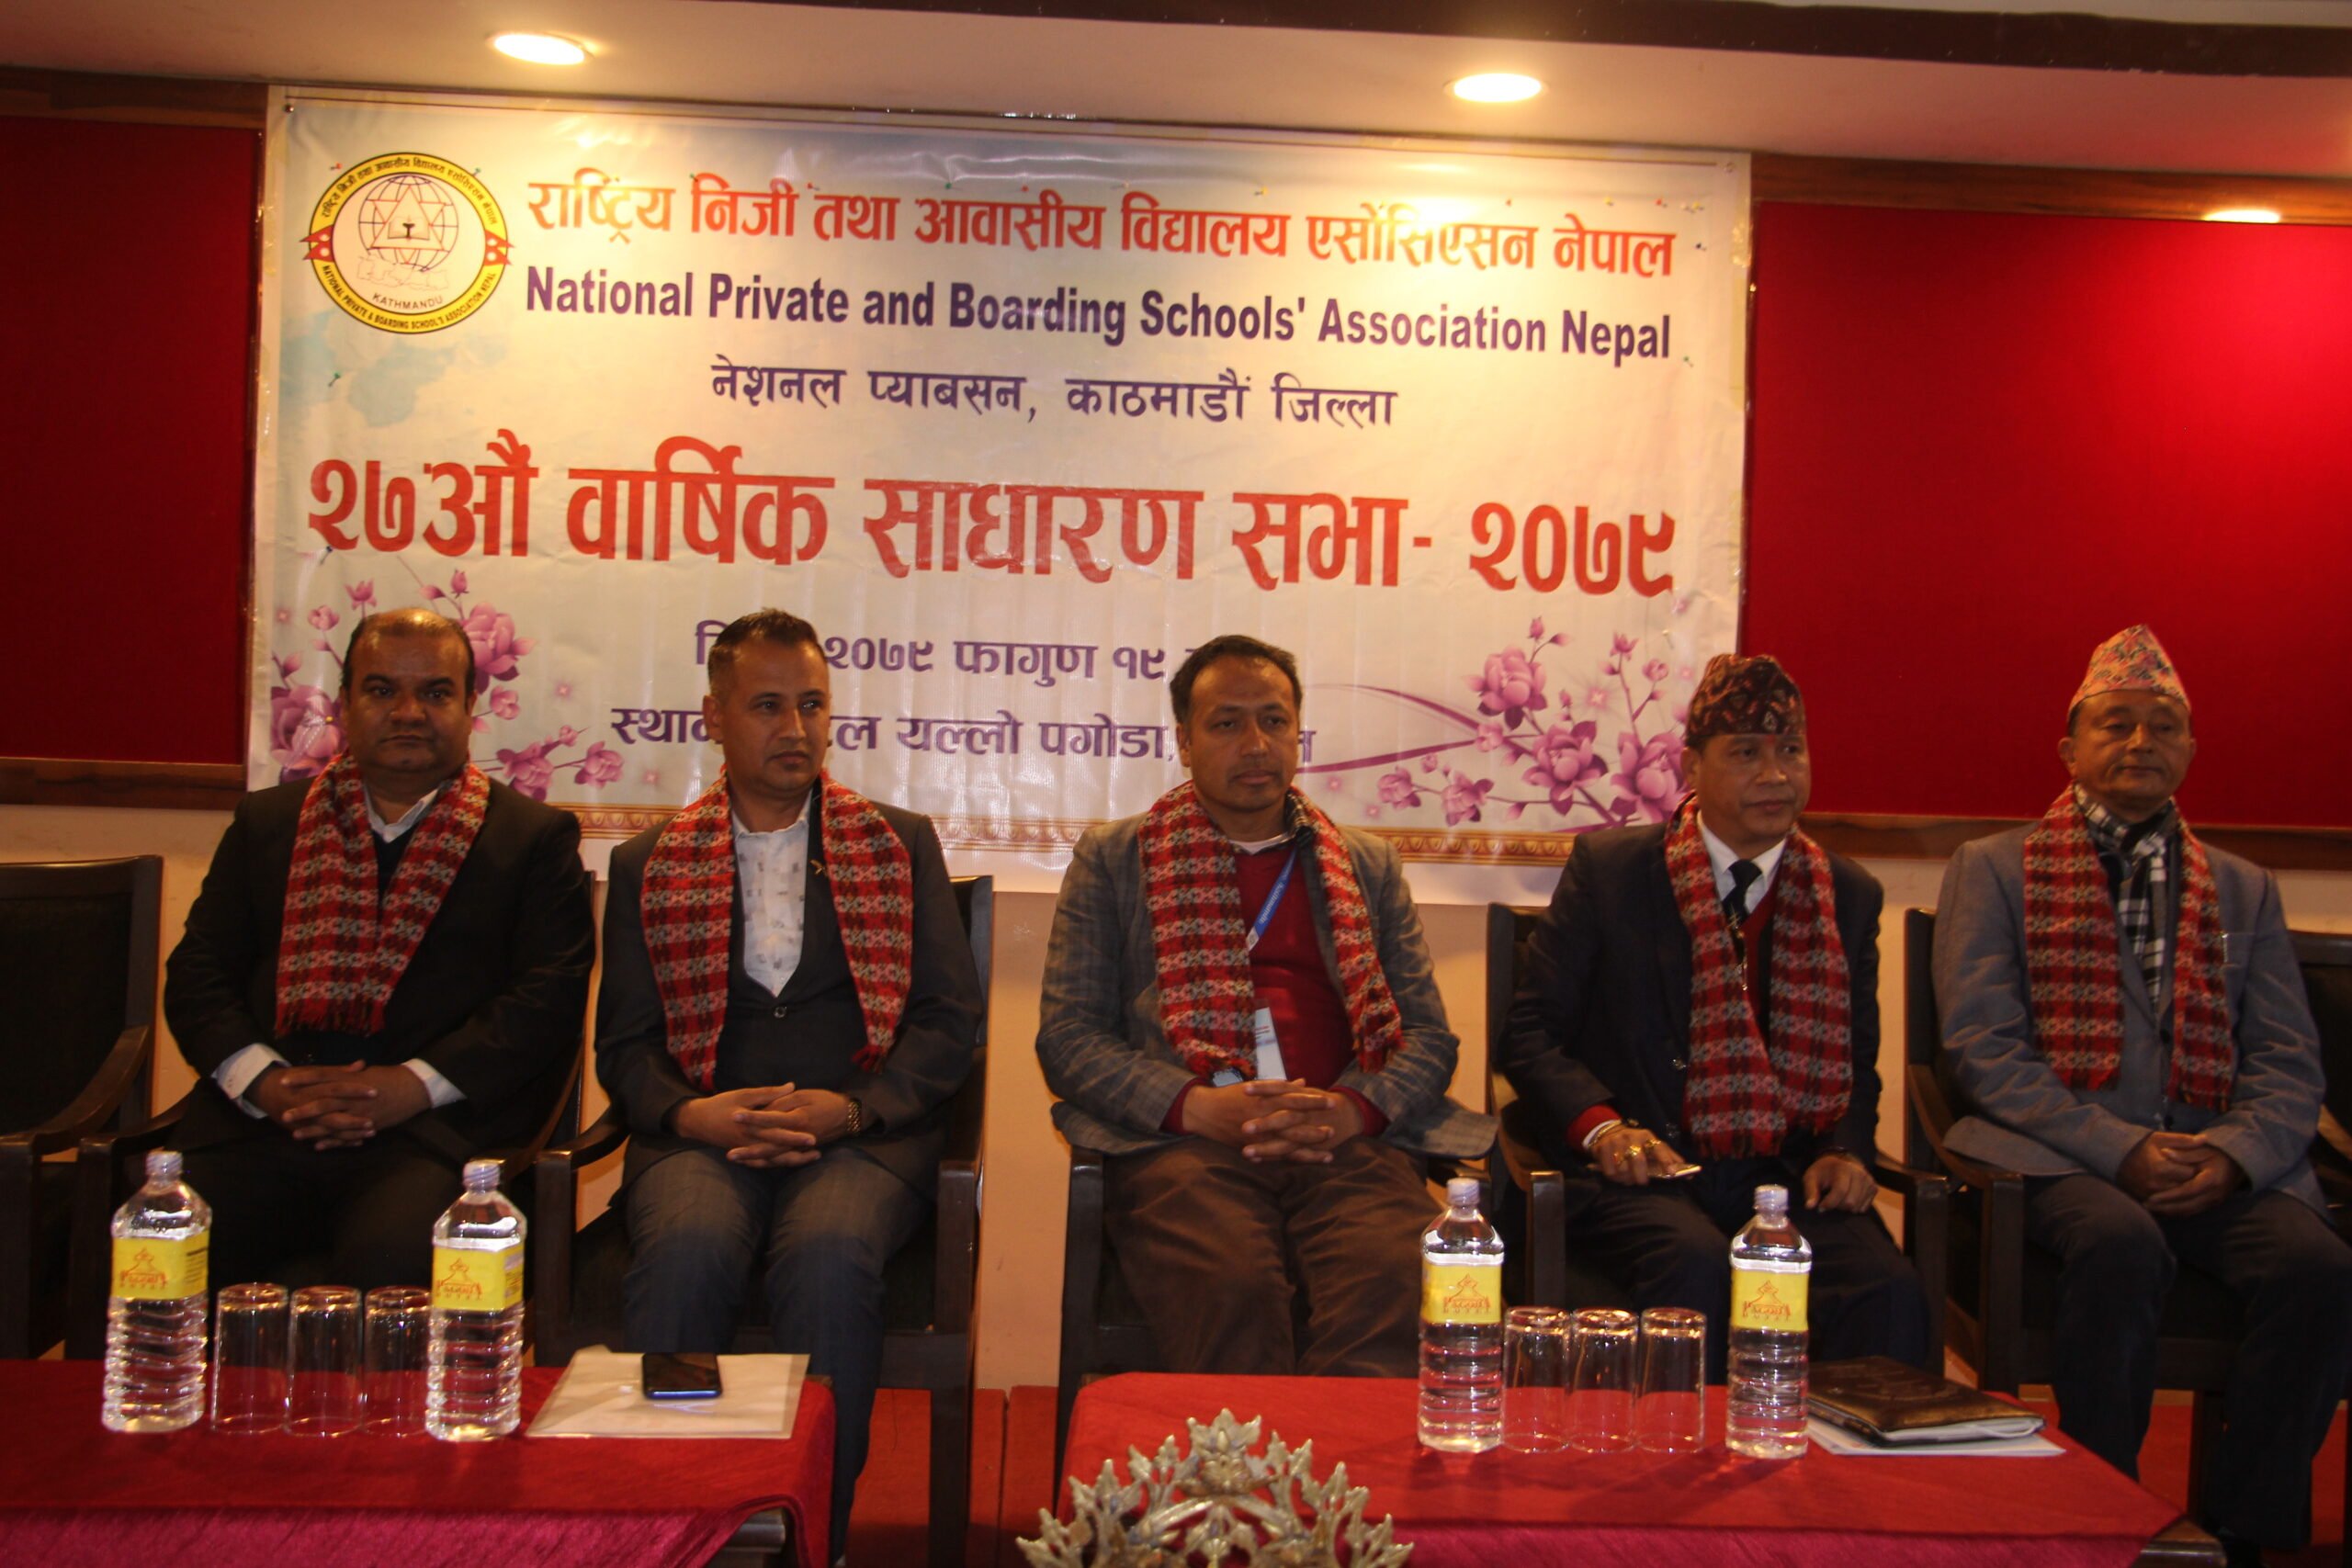 नेशनल प्याबसन काठमाडौँ जिल्लाको २७ औँ बार्षिक साधारण सभा सम्पन्न